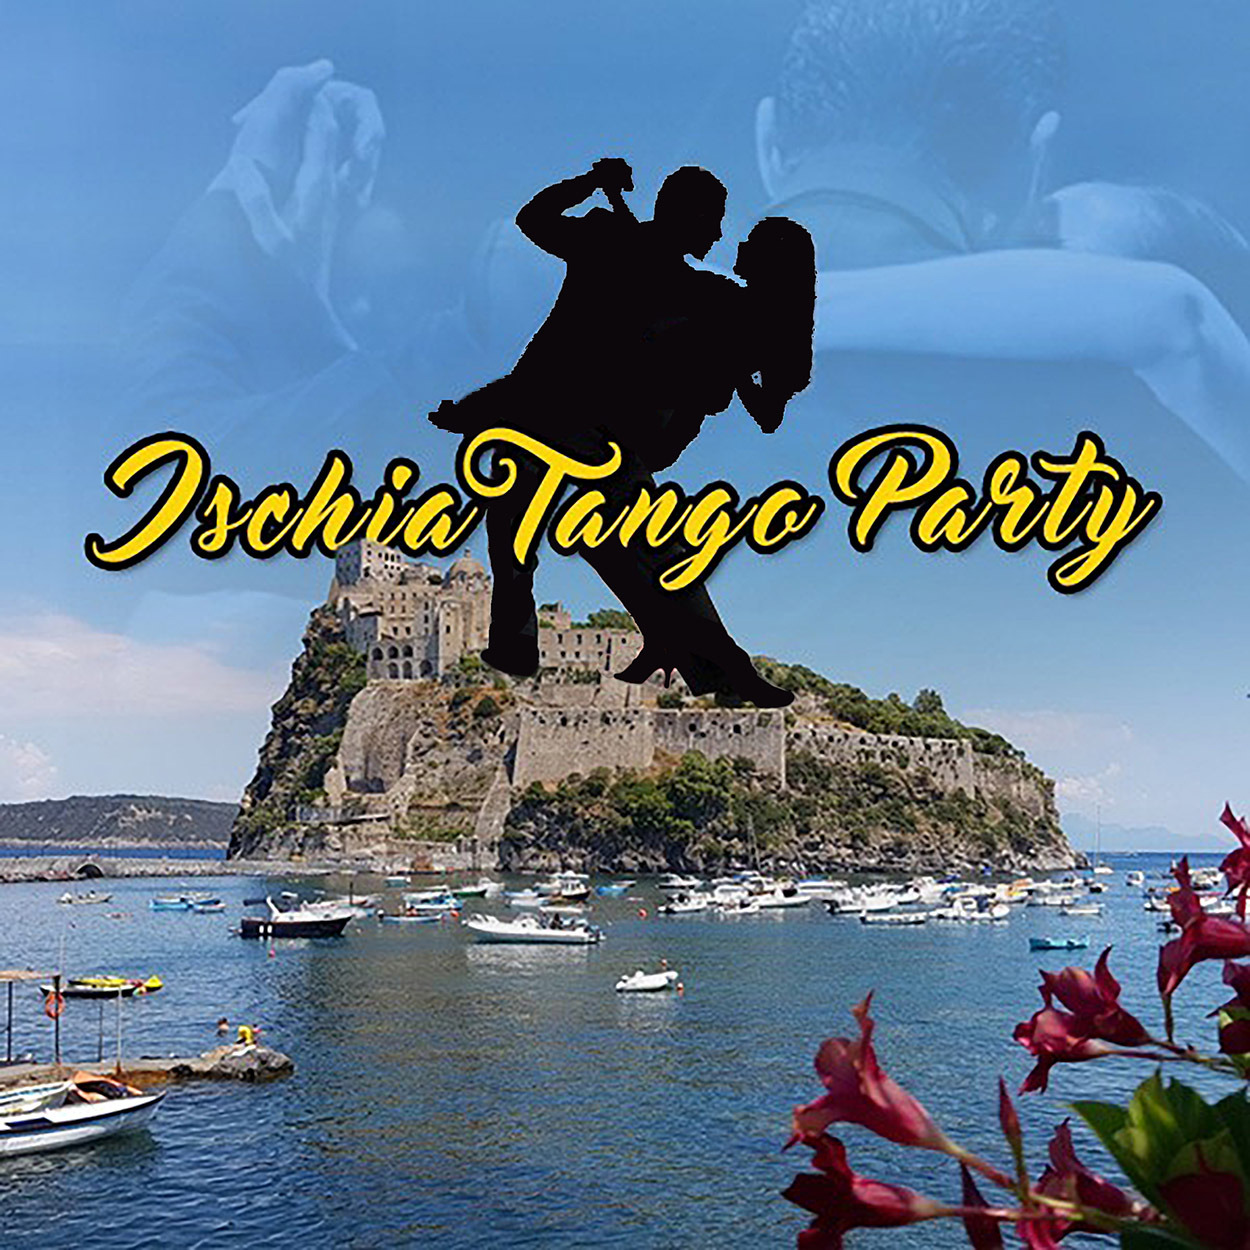 Ischia tango party